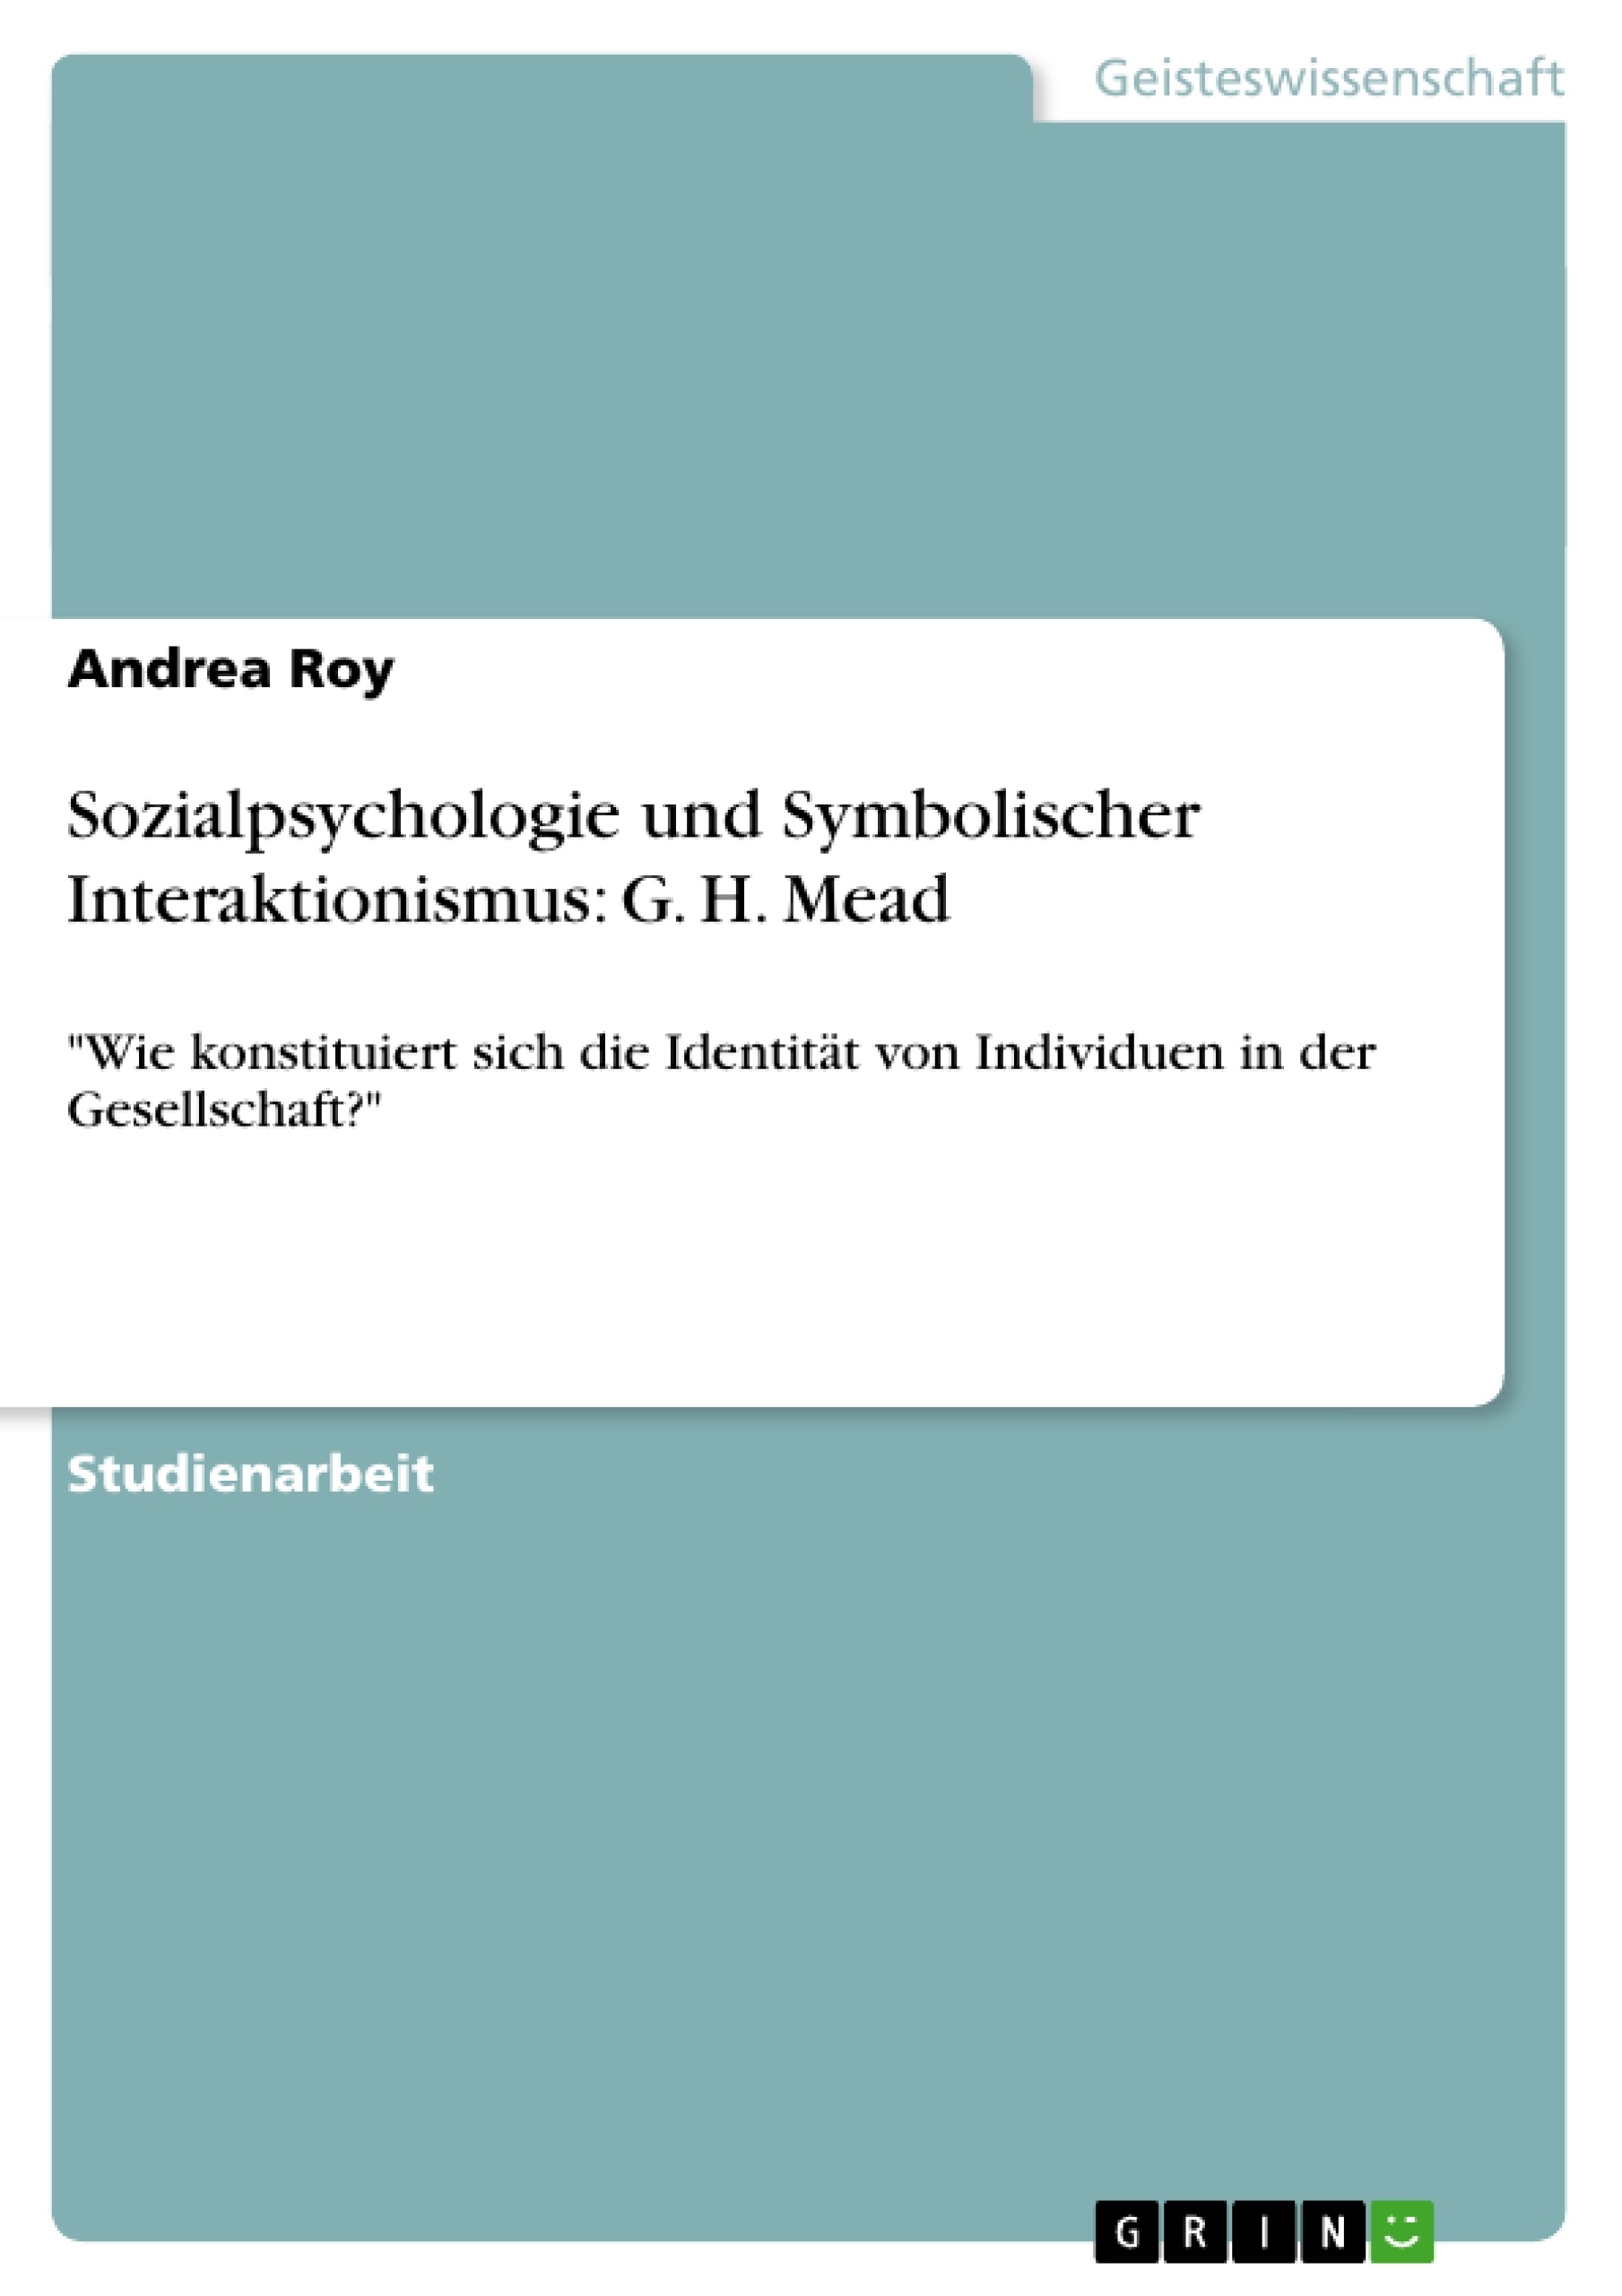 Título: Sozialpsychologie und Symbolischer Interaktionismus: G. H. Mead